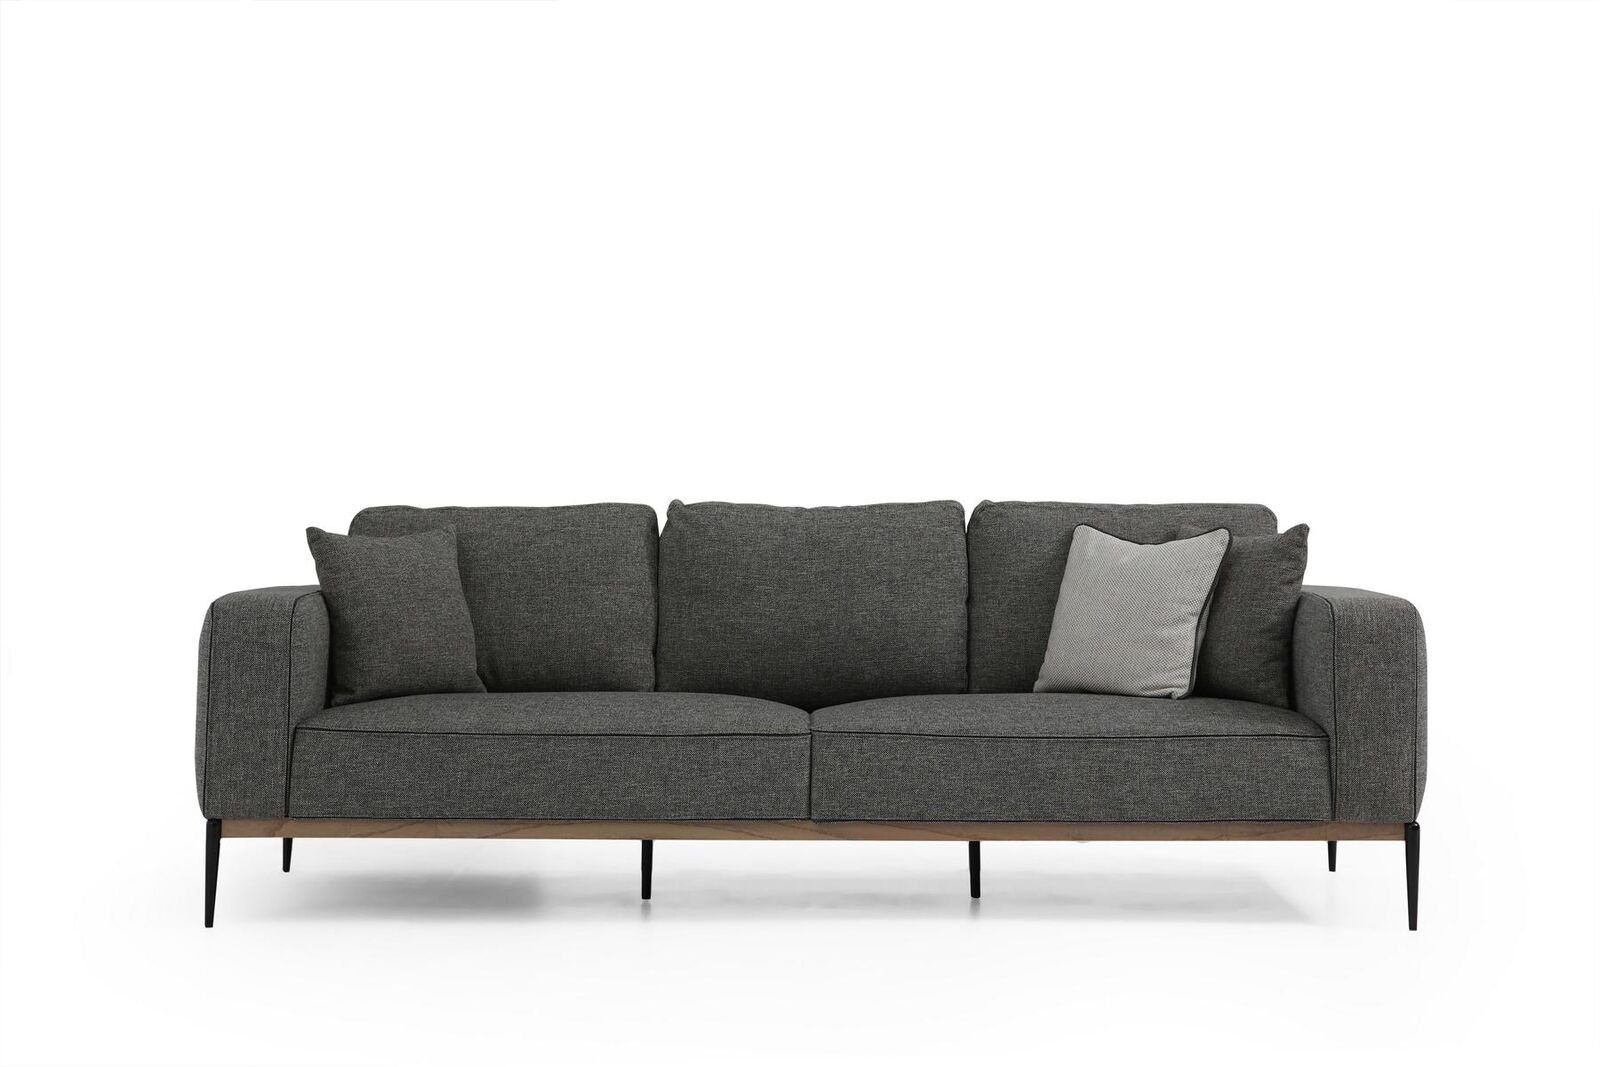 JVmoebel 3-Sitzer Zweisitzer Sofa 2 Sitzer Stoff Sofas Modern Design Wohnzimmer Grau, 1 Teile, Made in Europa